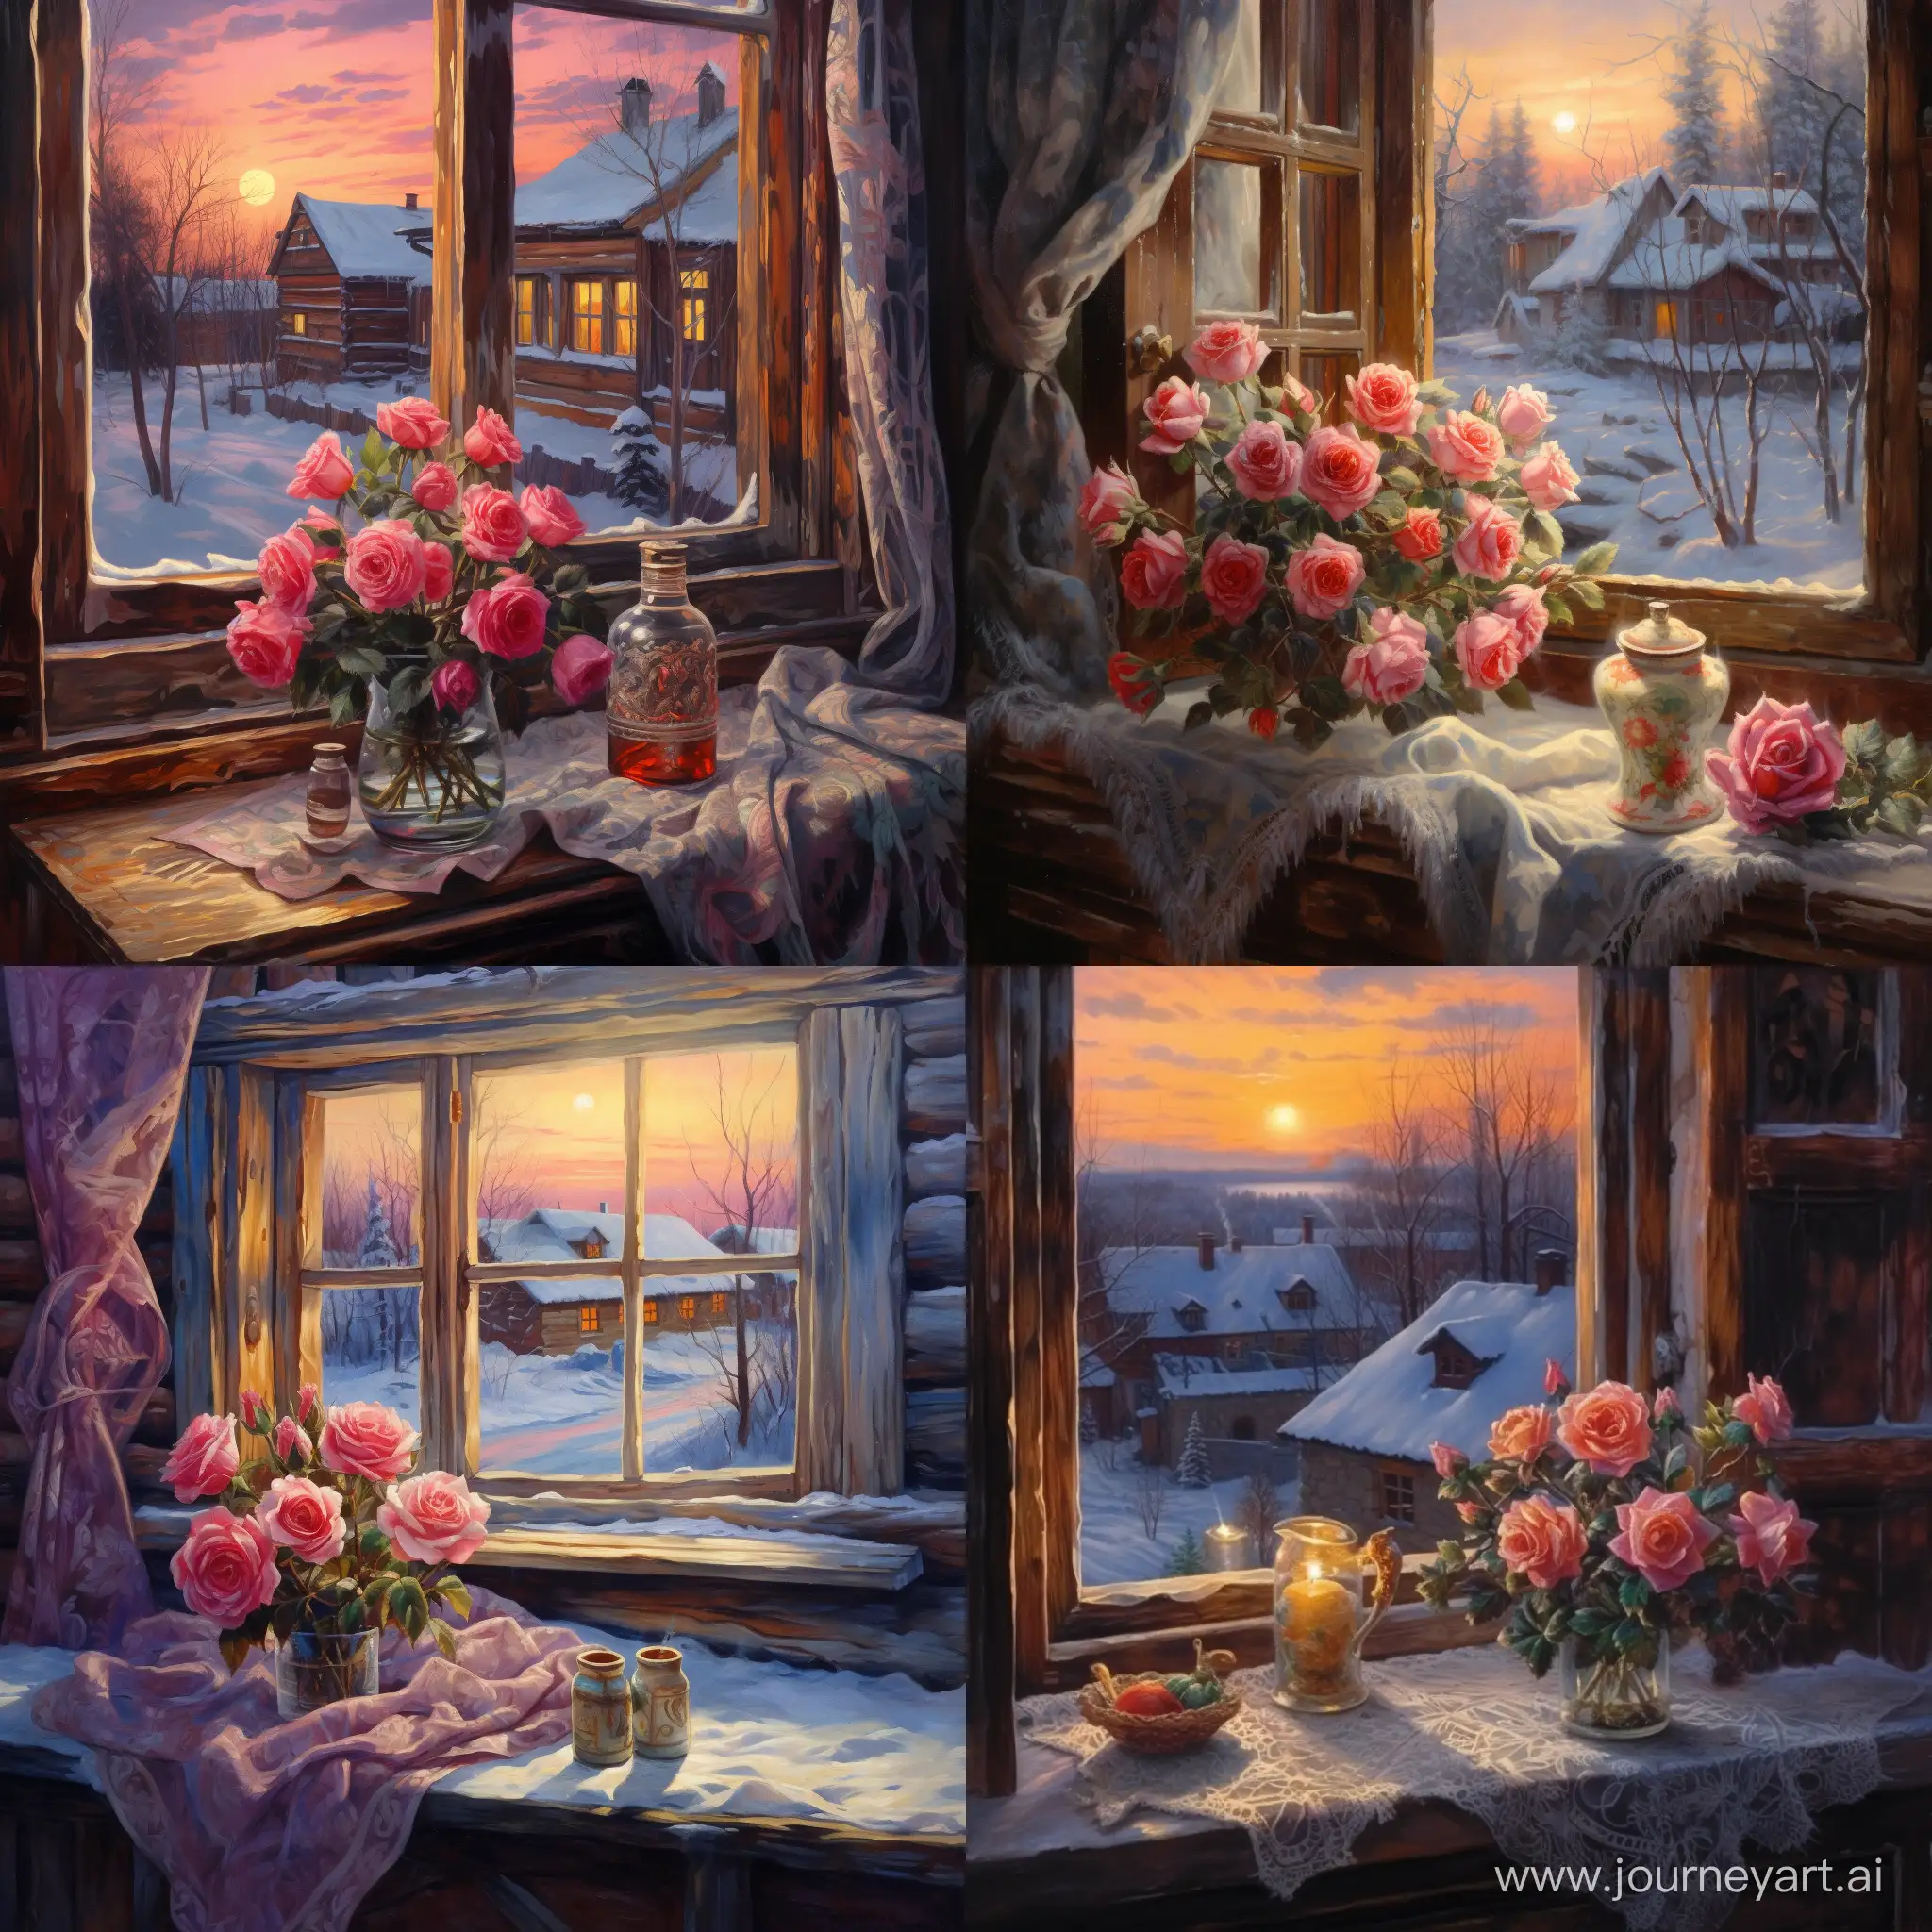 роза на подоконнике, в окне ночной зимний пейзаж, русская деревня, свет в окнах домов